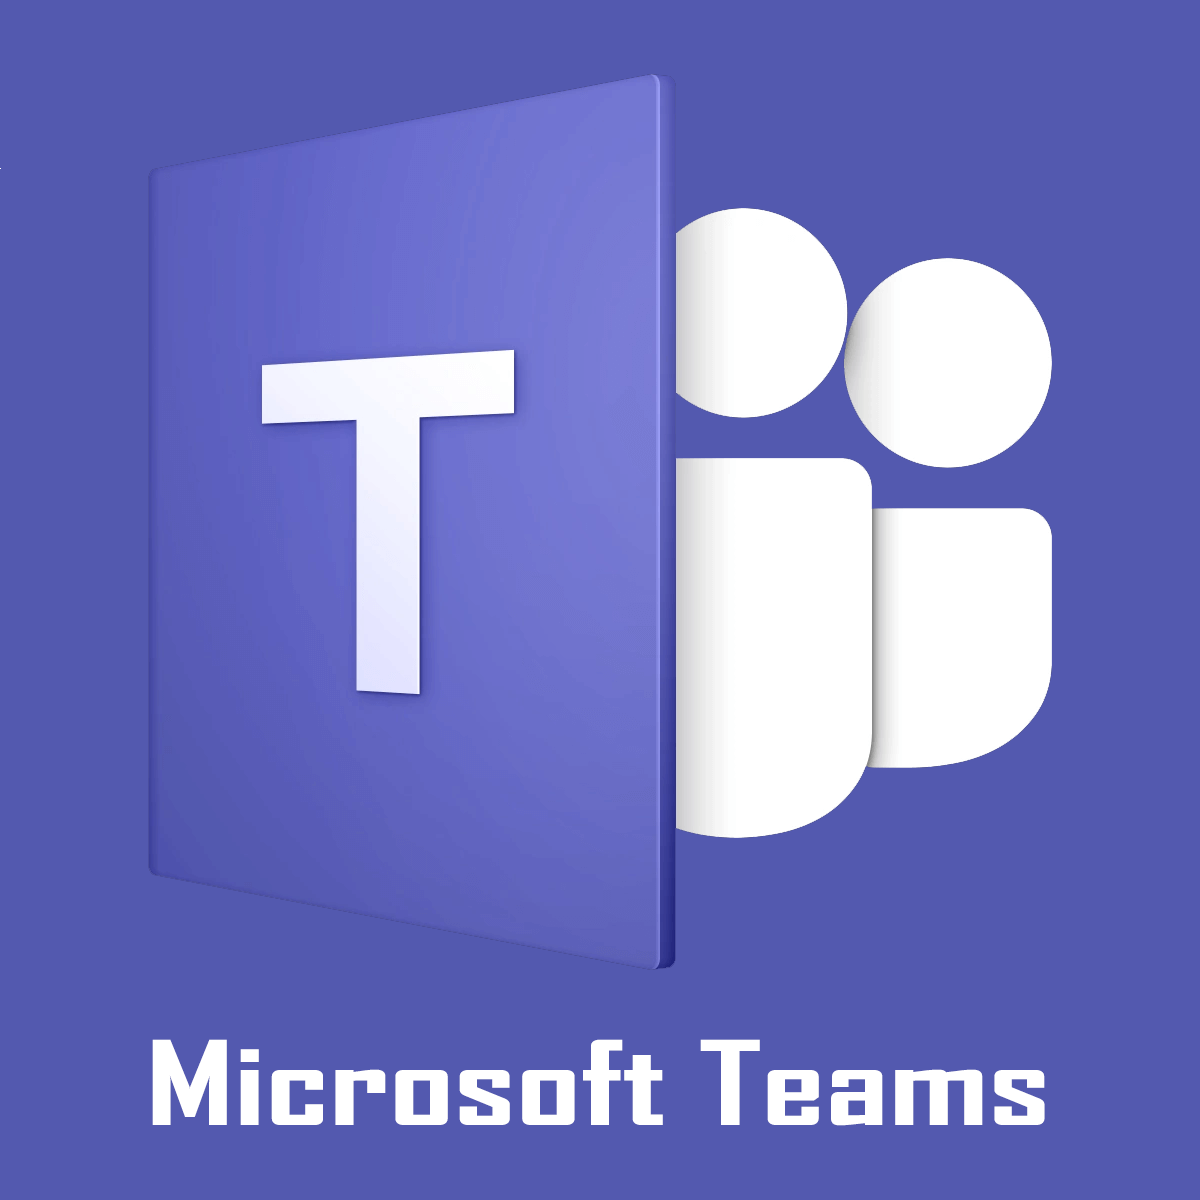 Microsoft Teams error code 503